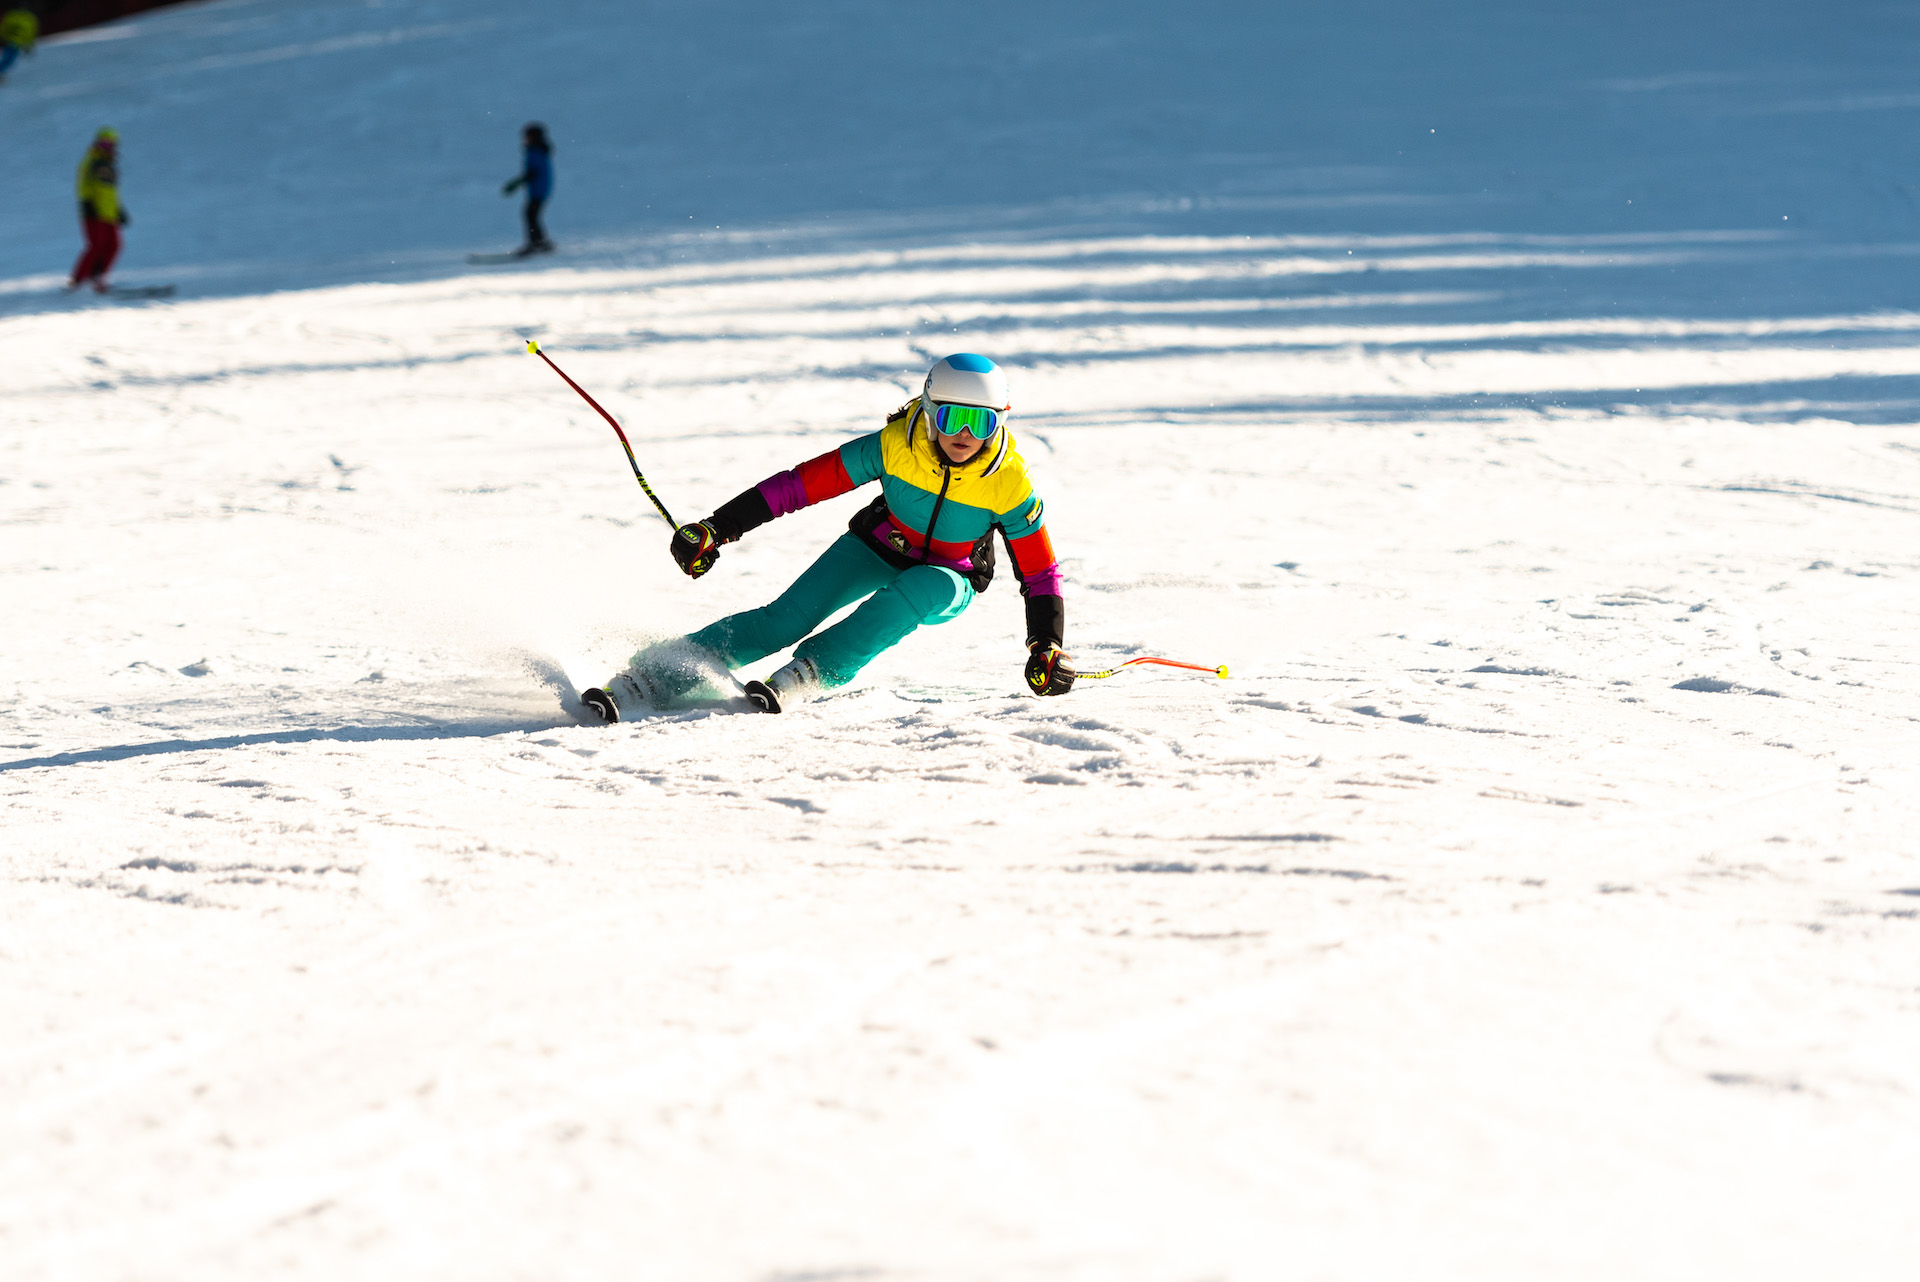 Karnet narciarski w promocji BLACK WEEKEND aż 50% taniej!